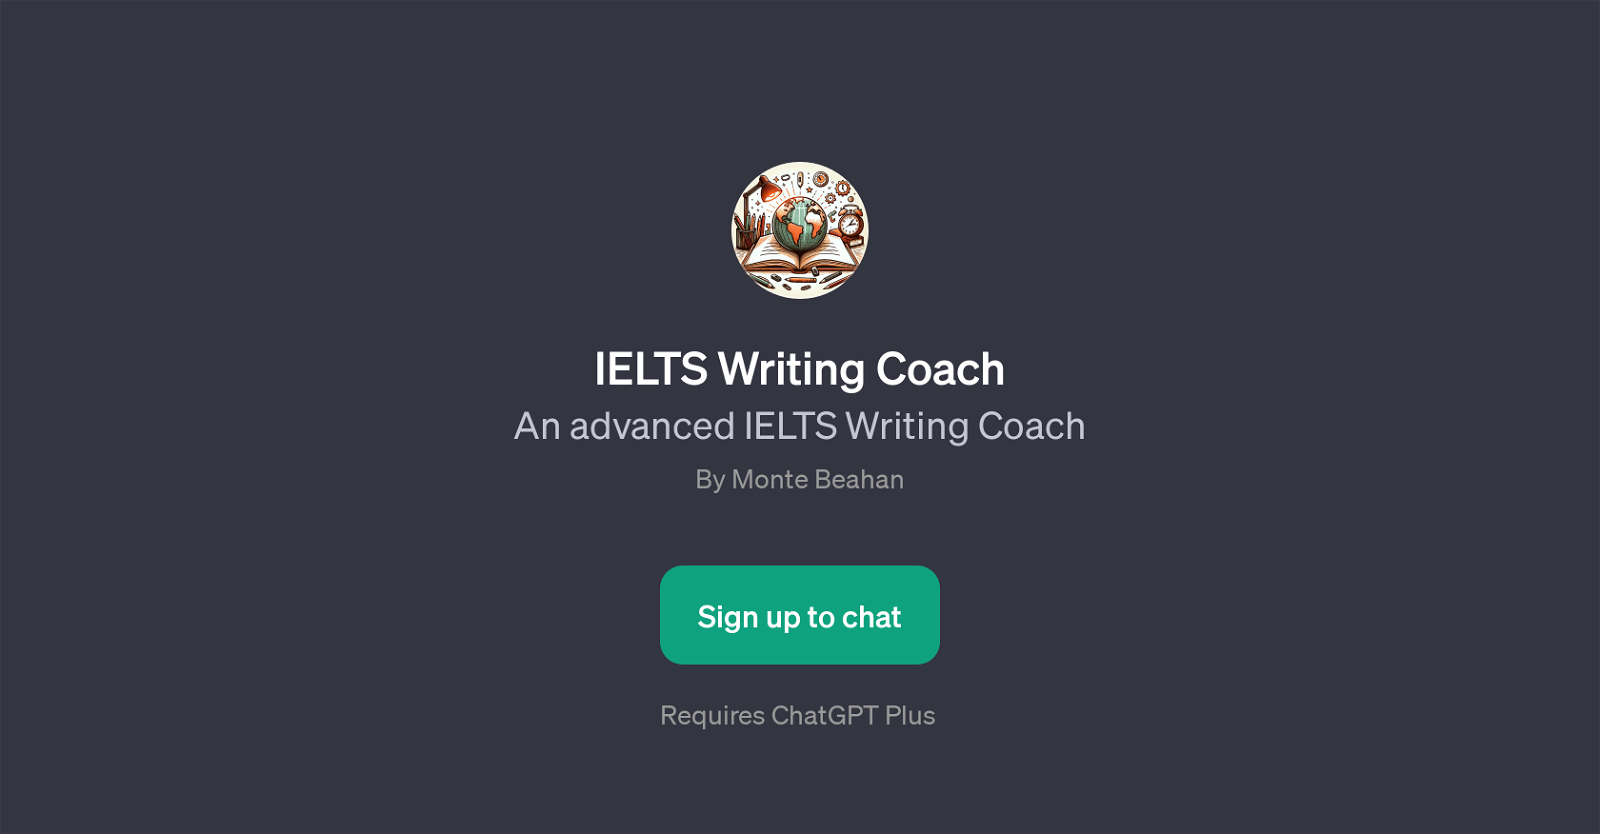 IELTS Writing Coach website